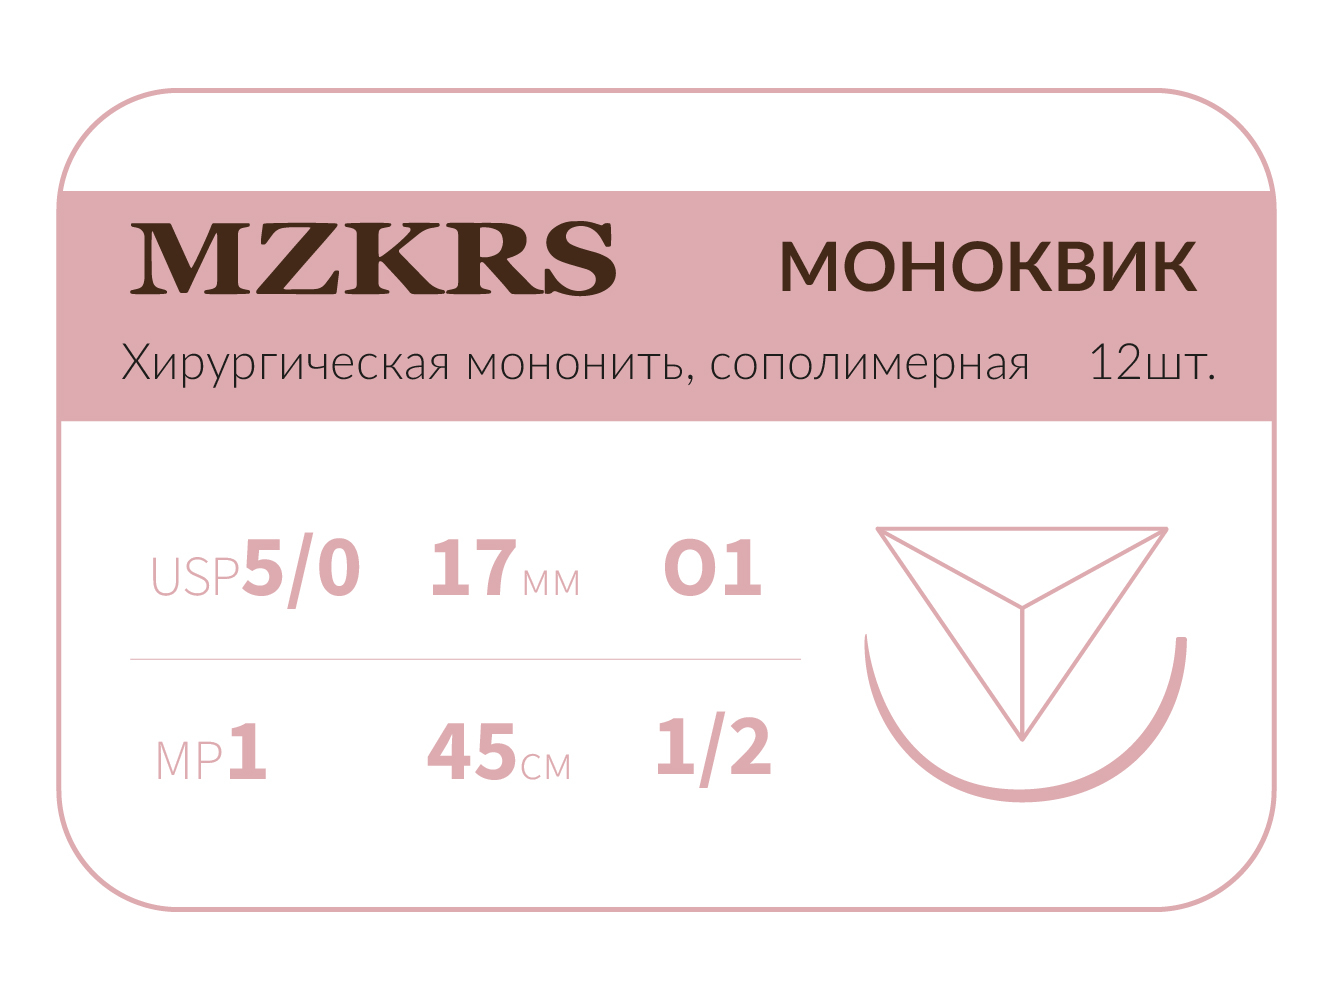 1712О1 Premium-5/0 (1)45 МОНК МОНОКВИК хирургическая мононить, сополимерная, MZKRS (Россия)